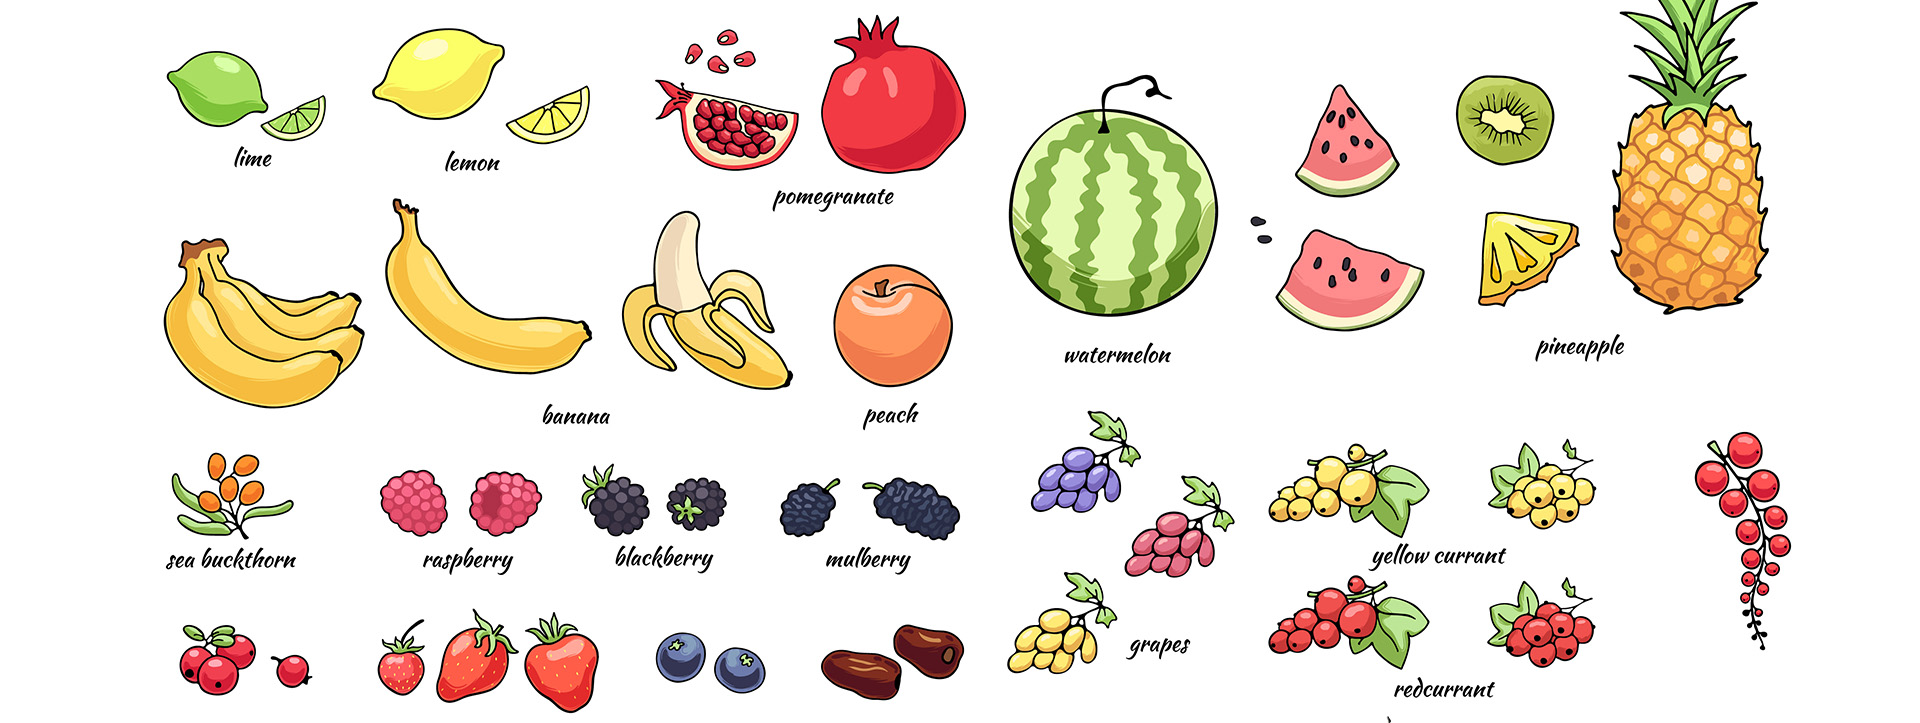 Fruta que empieza por a